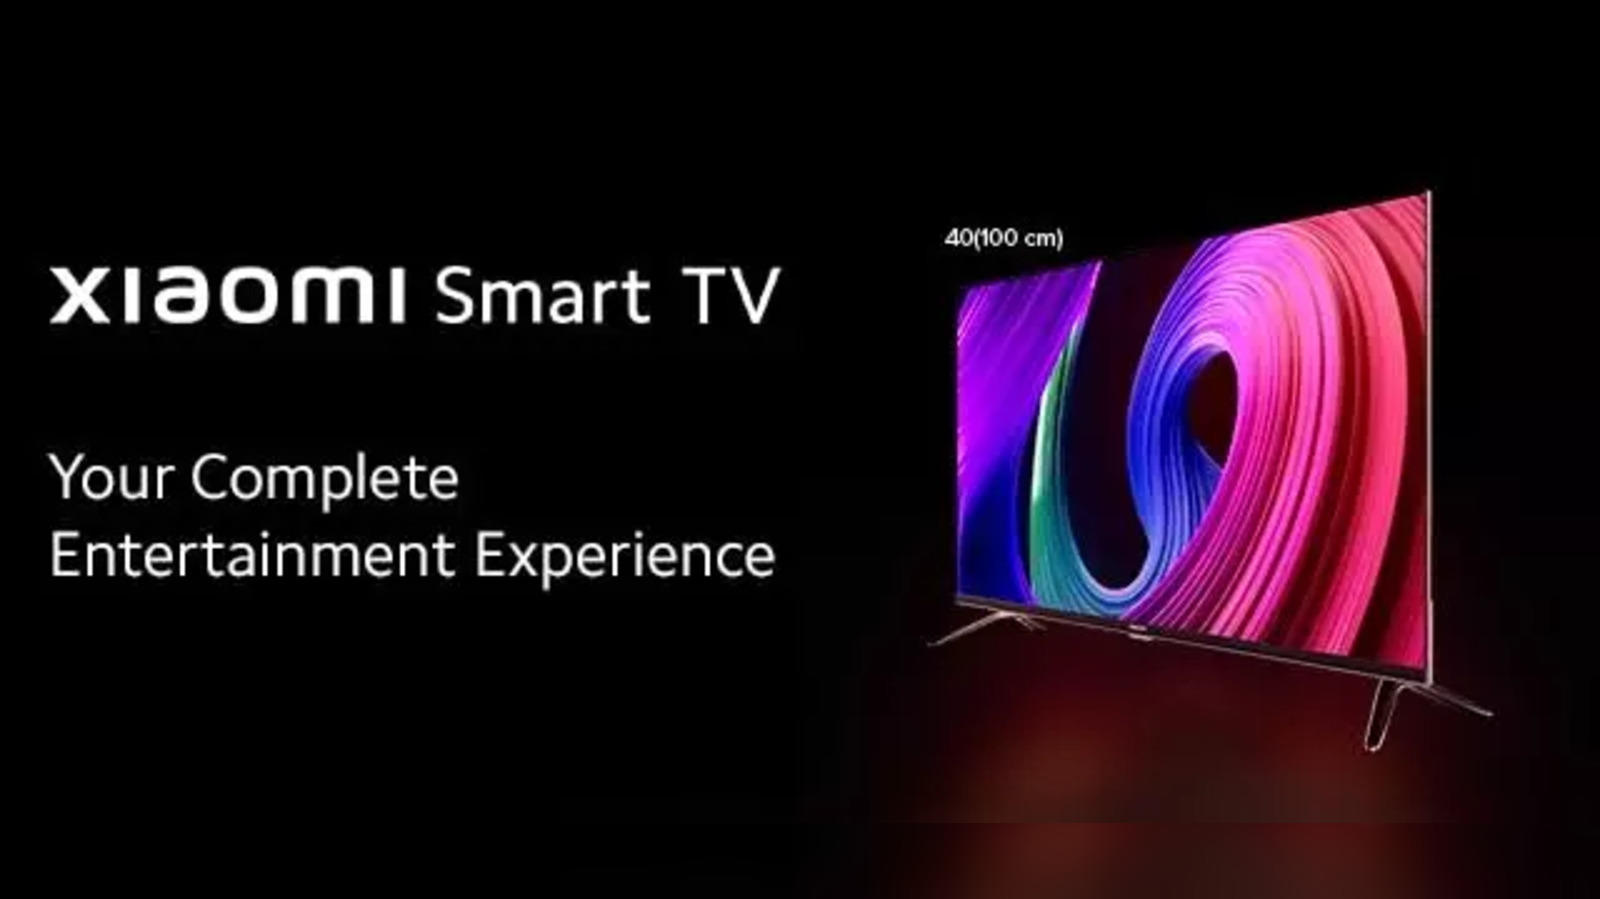 Best MI Smart TVs: 6 Best MI Smart TVs in India for Top Picture